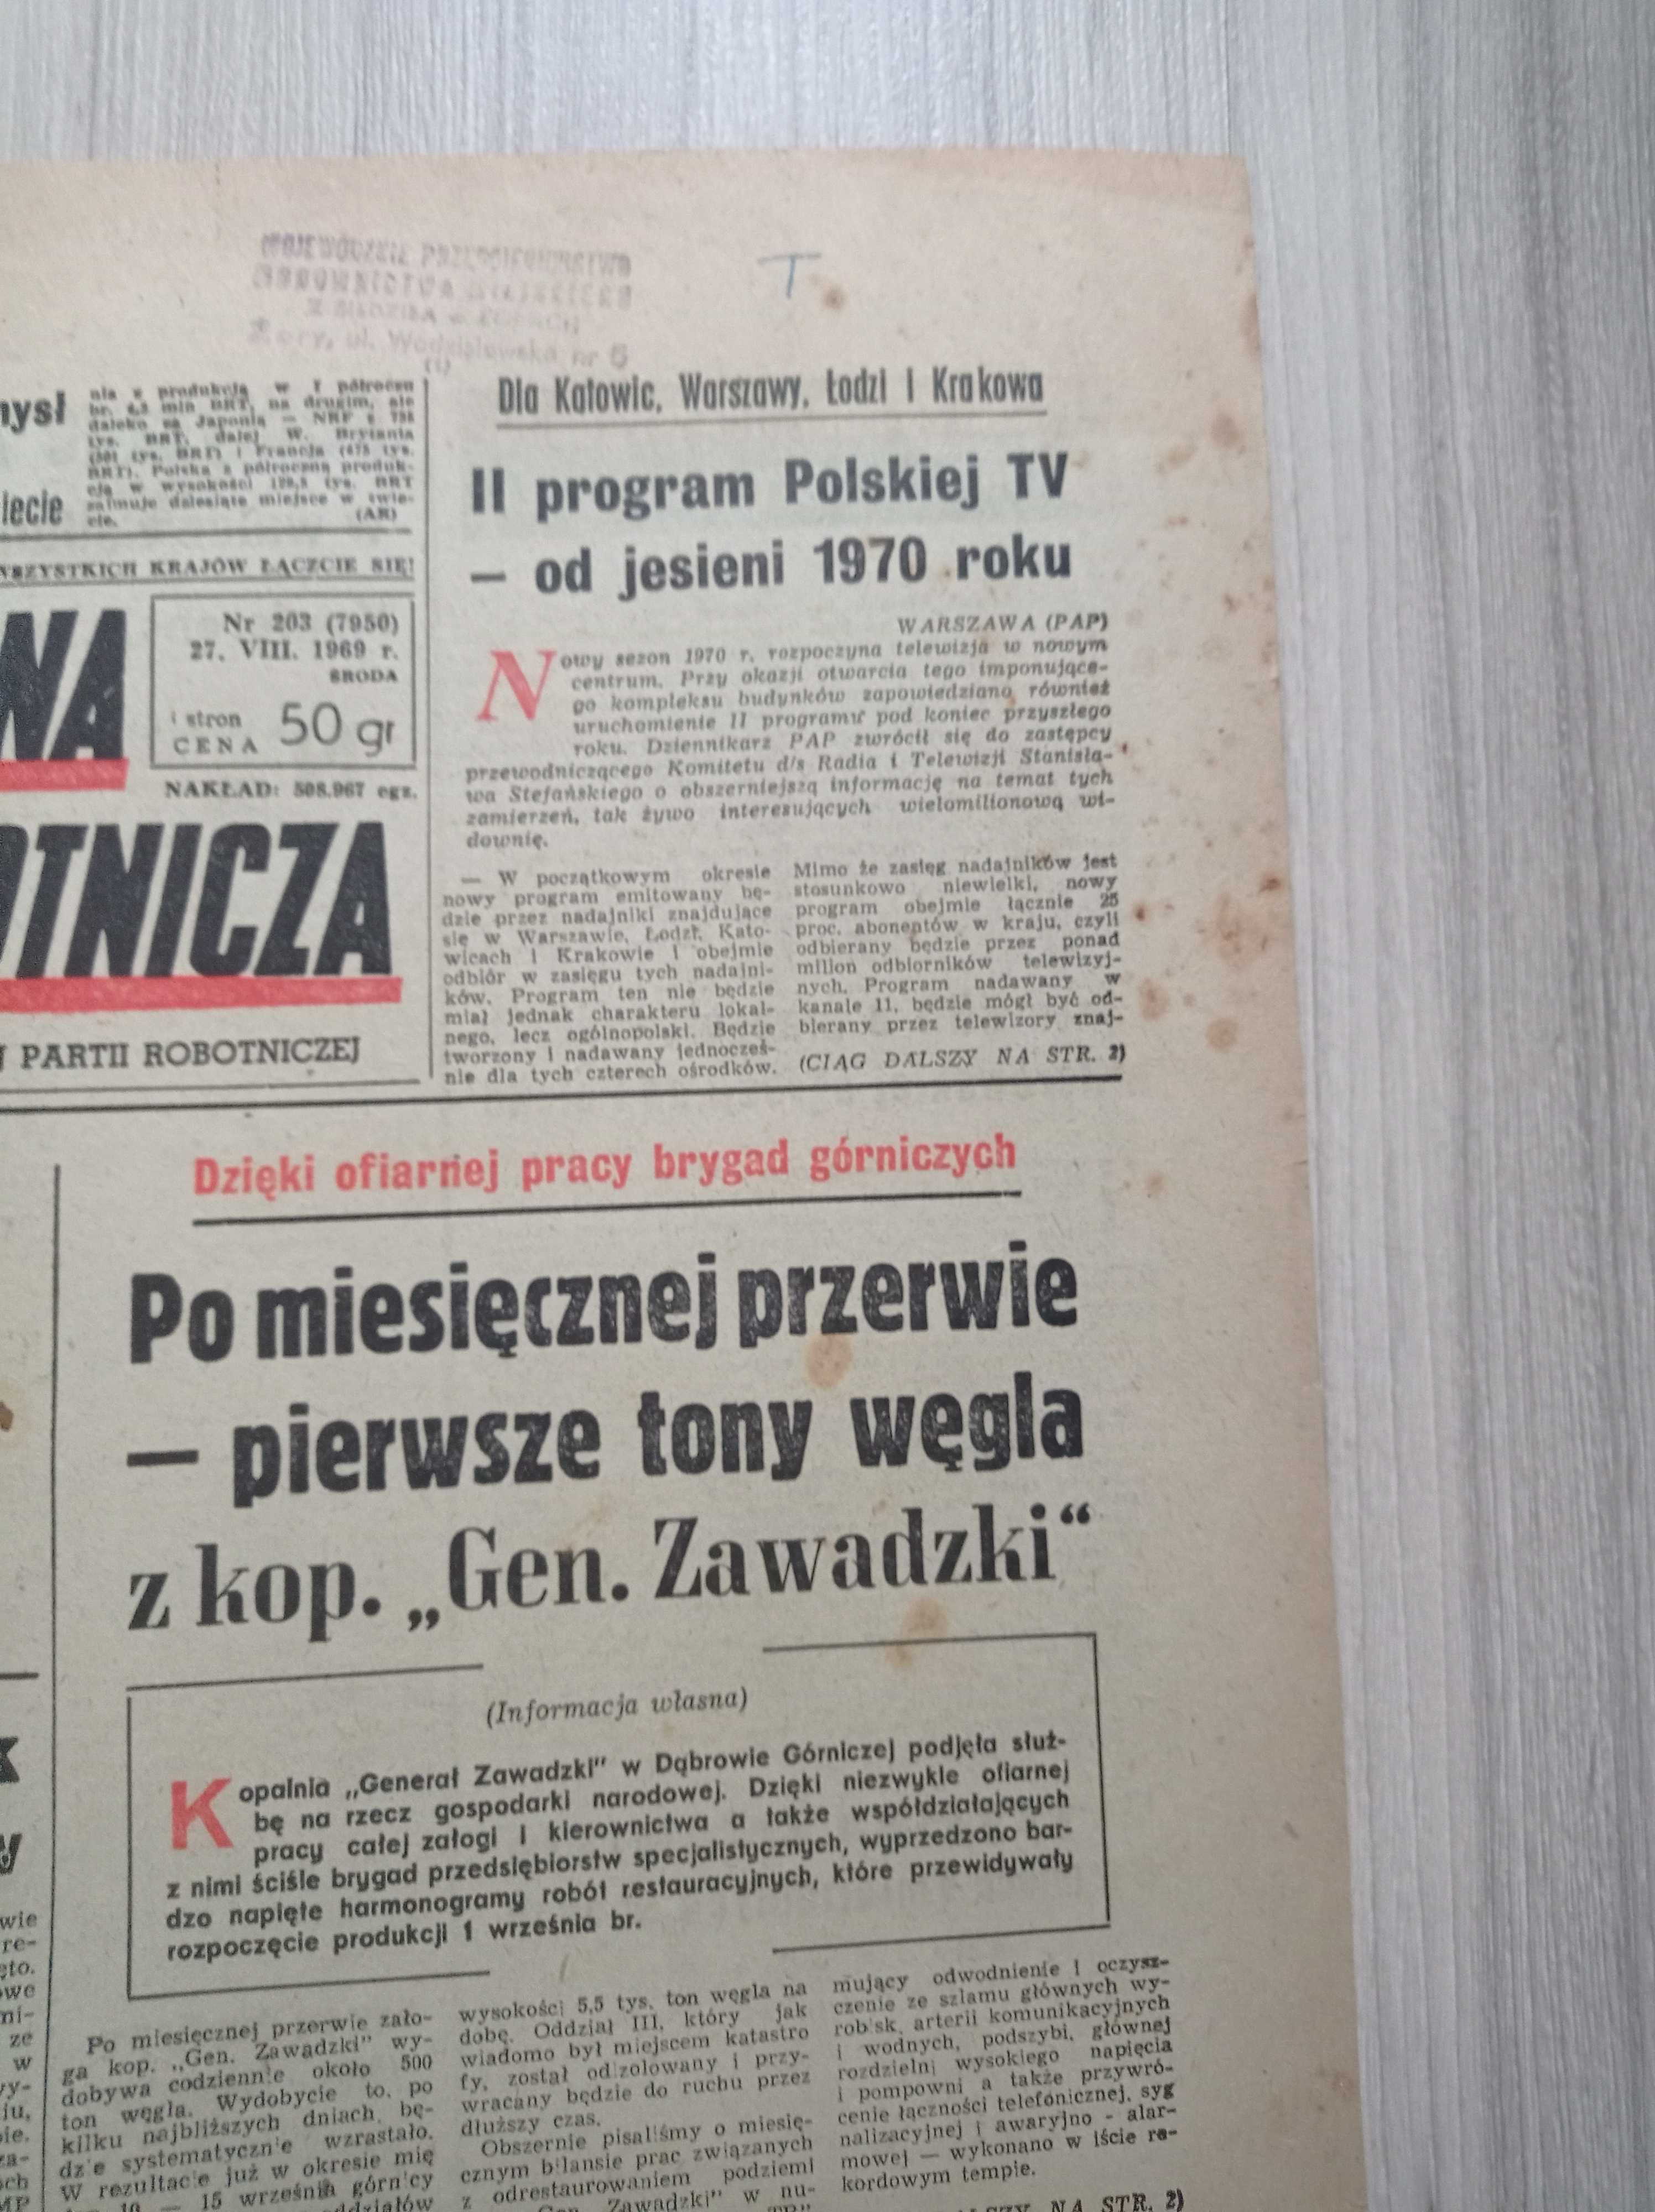 Trybuna robotnicza 203 / 1969